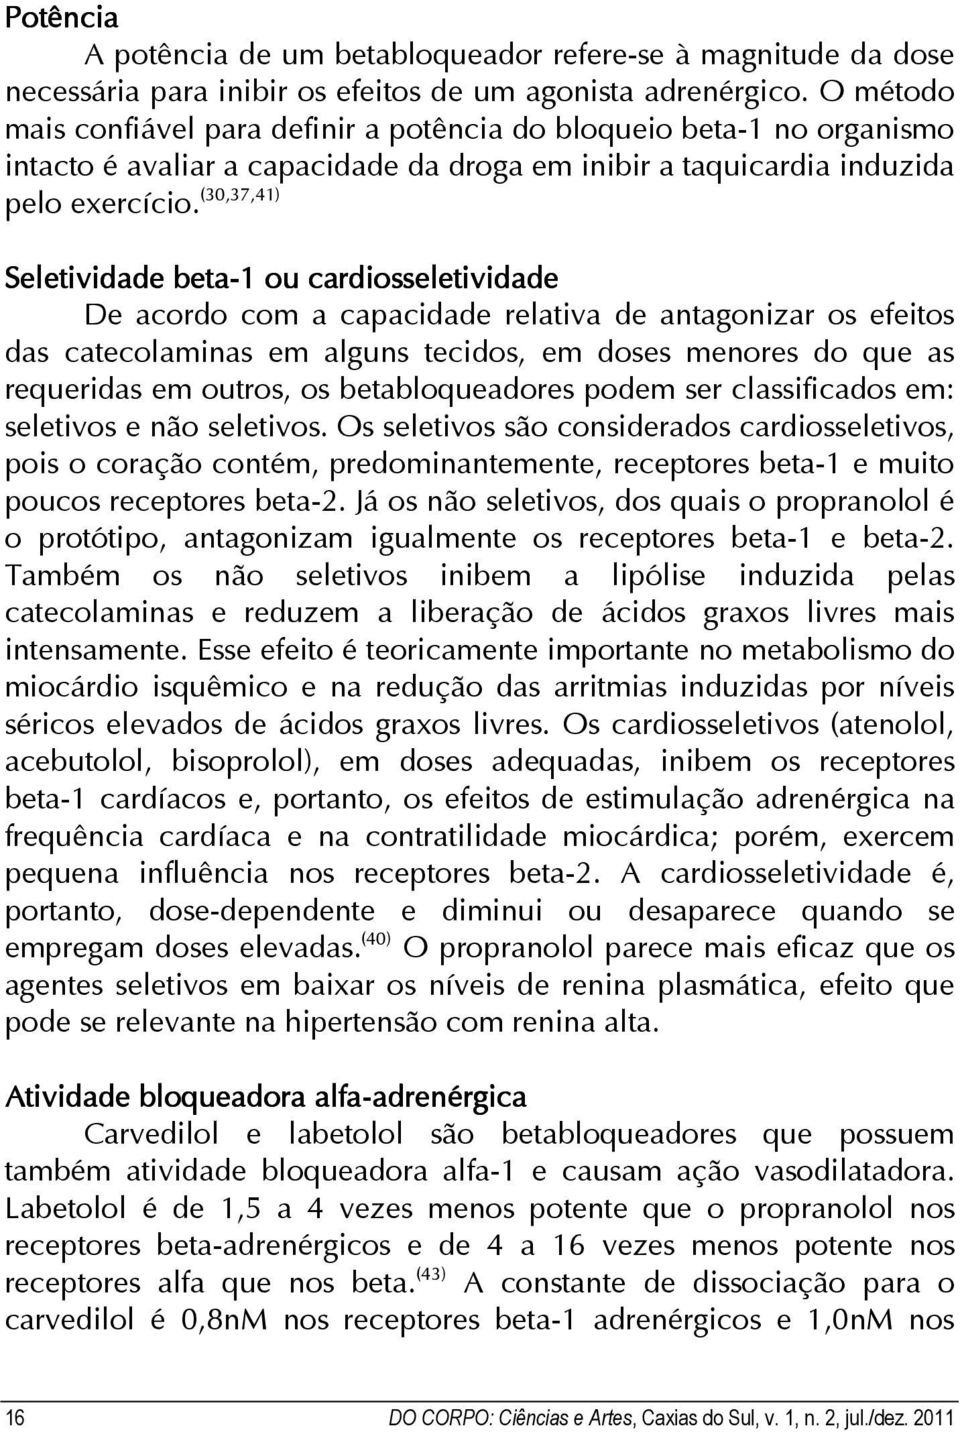 (30,37,41) Seletividade beta-1 ou cardiosseletividade De acordo com a capacidade relativa de antagonizar os efeitos das catecolaminas em alguns tecidos, em doses menores do que as requeridas em